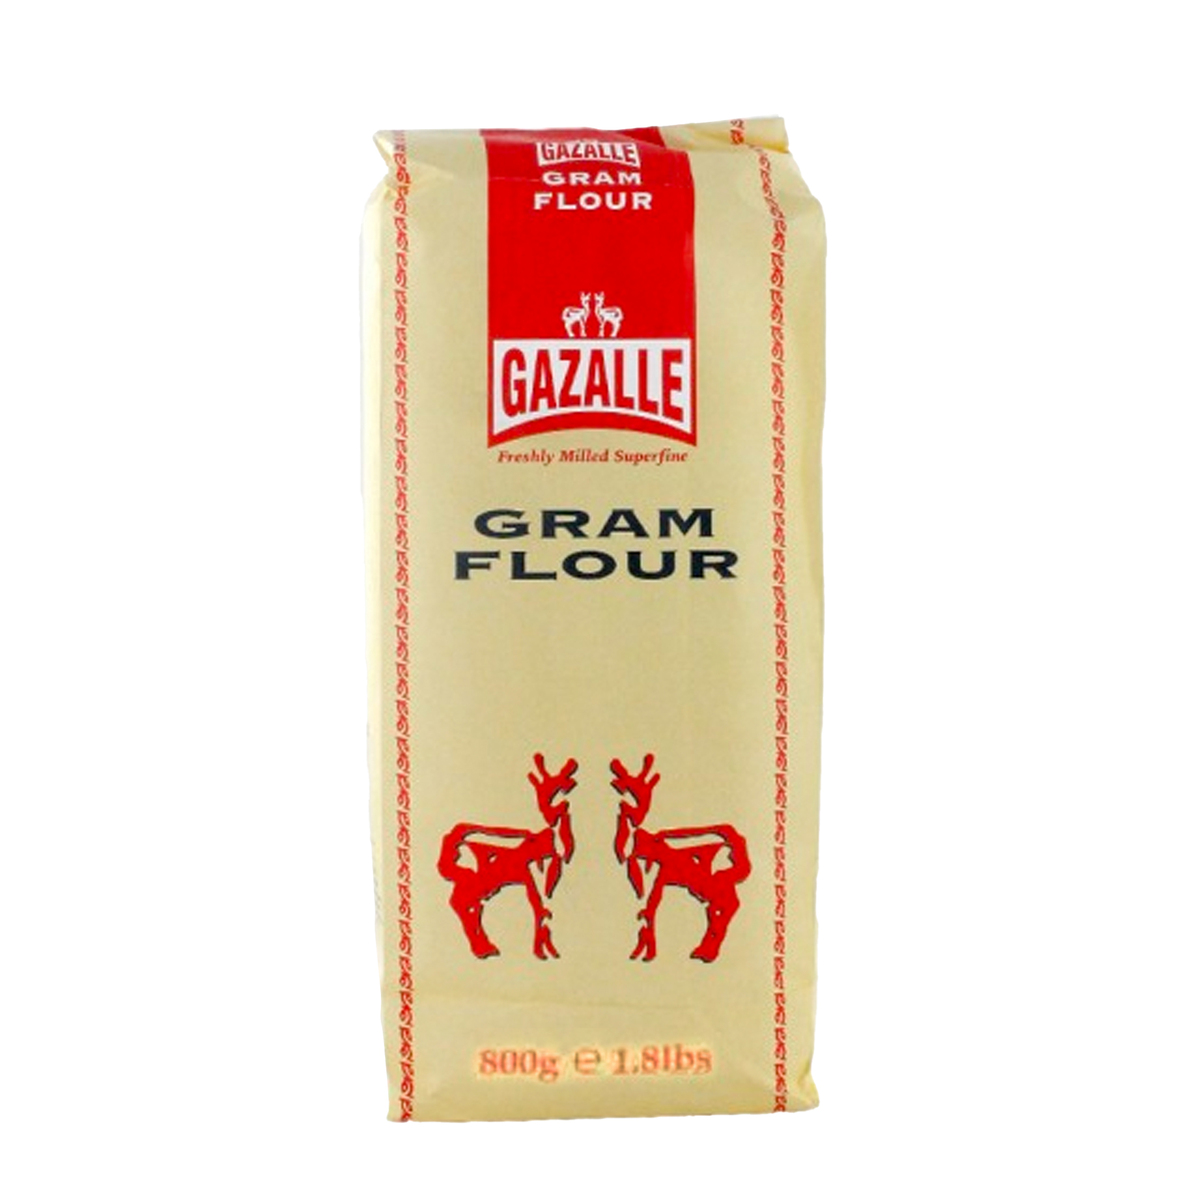 Gazalle Gram Flour Value Pack 2 x 800 g